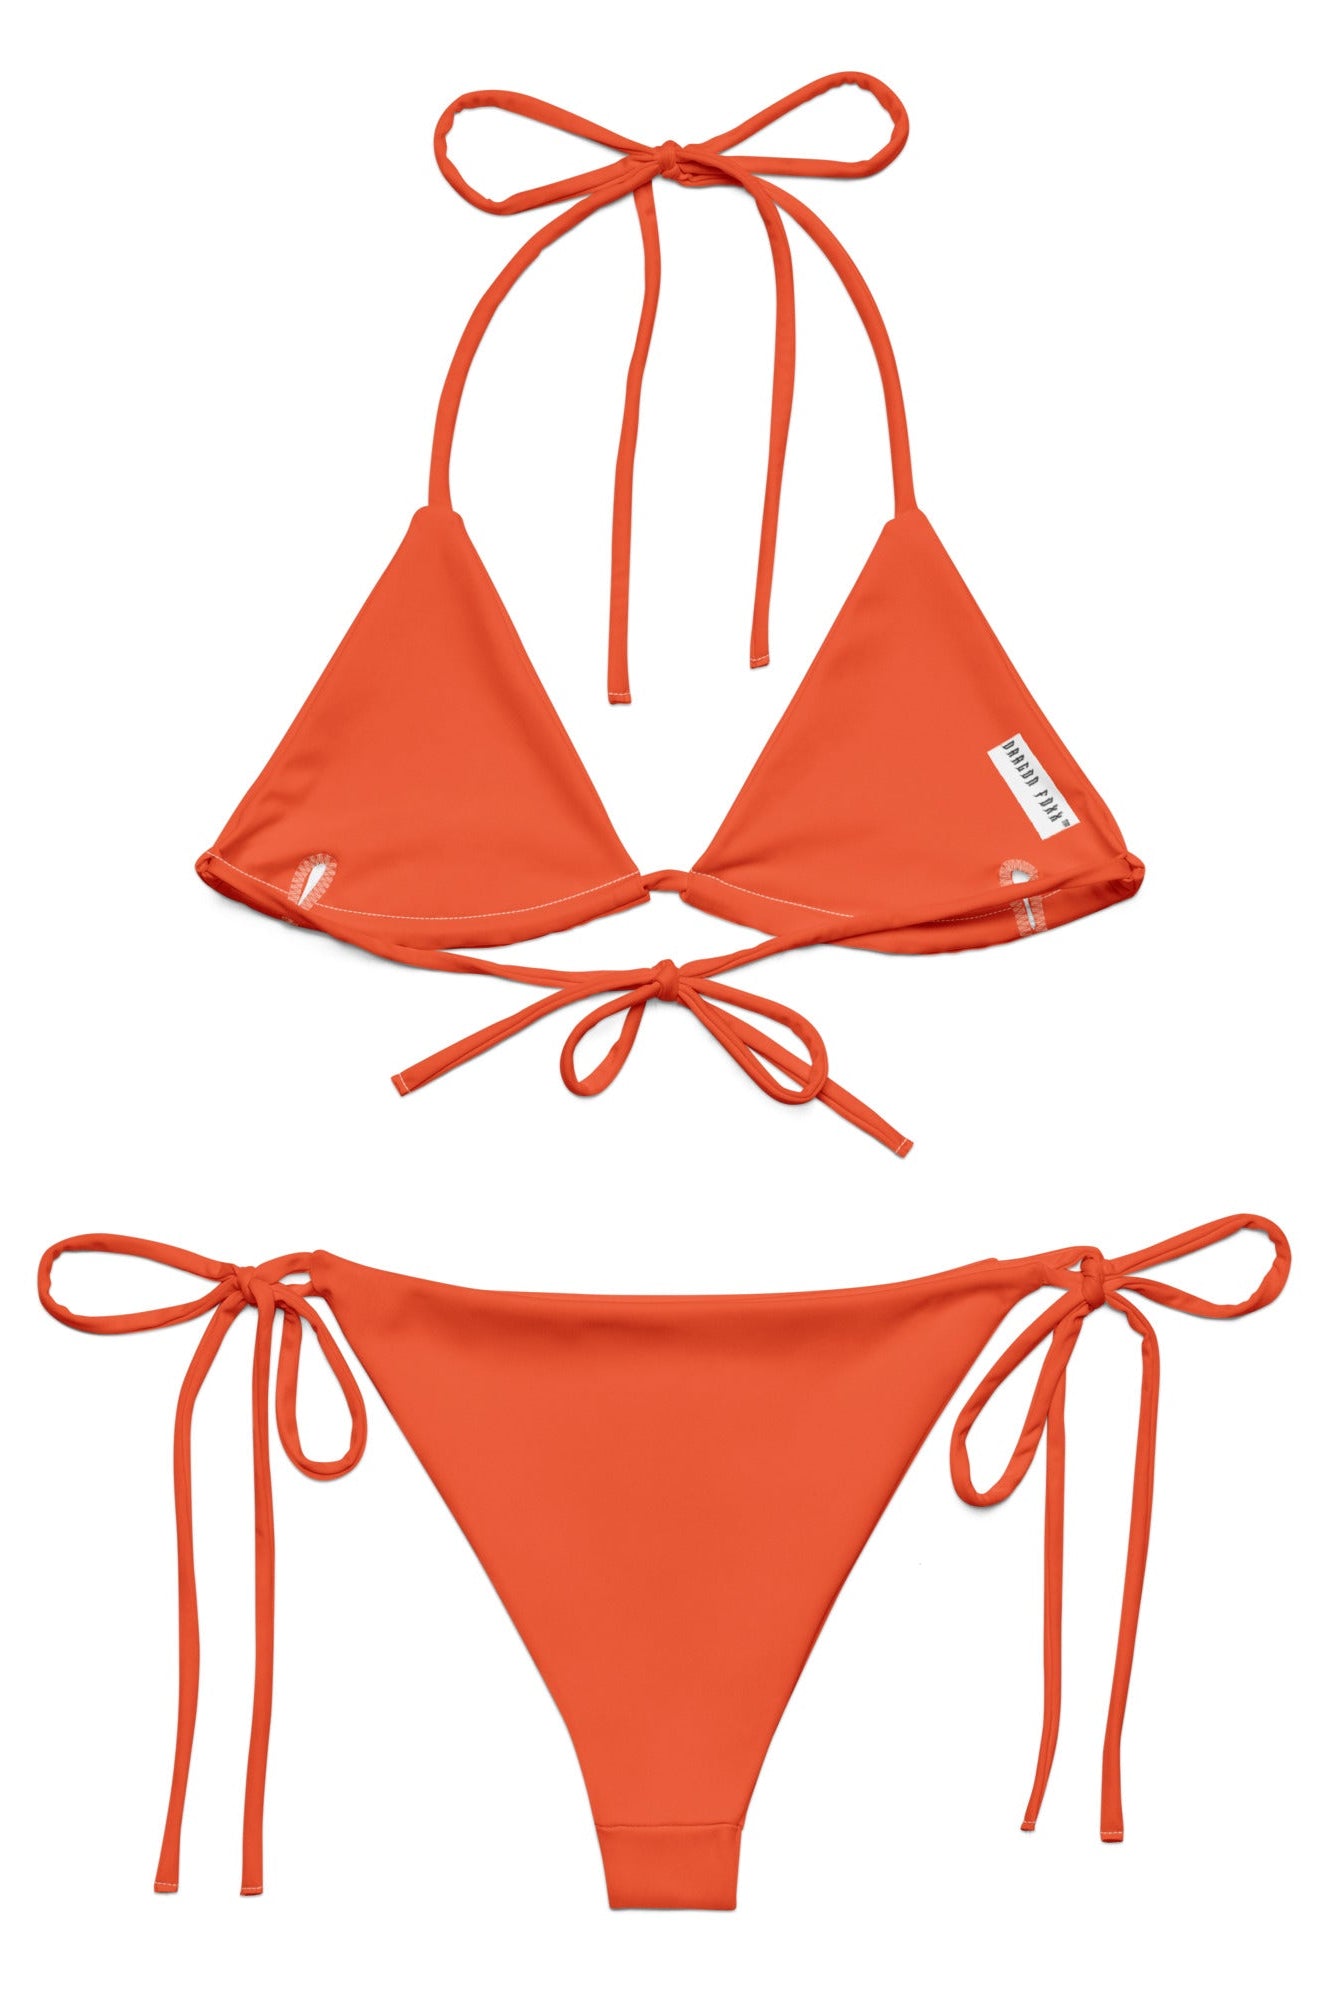 Outrageous Orange Eco String Bikini Set - Eco String Bikini Set - DRAGON FOXX™ - Outrageous Orange Eco String Bikini Set - 1750365_16553 - 2XS - Outrageous Orange - String Bikini - Dragon Foxx™ - Dragon Foxx™ Eco String Bikini Set - Dragon Foxx™ Eco String Bikini Sets